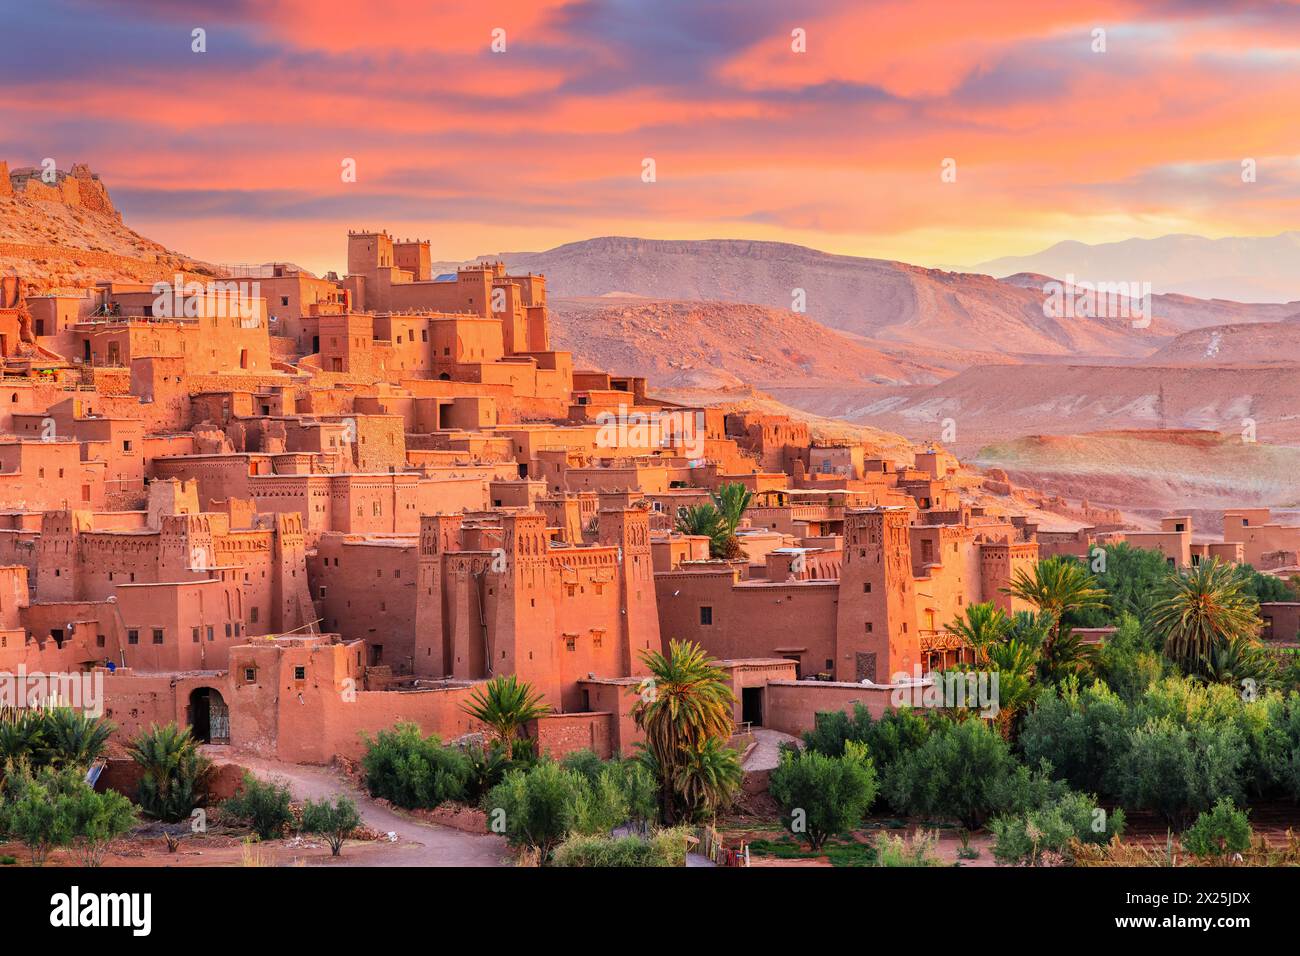 Ait-Ben-Haddou, ksar ou village fortifié de la province de Ouarzazate, Maroc. Premier exemple de l'architecture du sud du Maroc. Banque D'Images